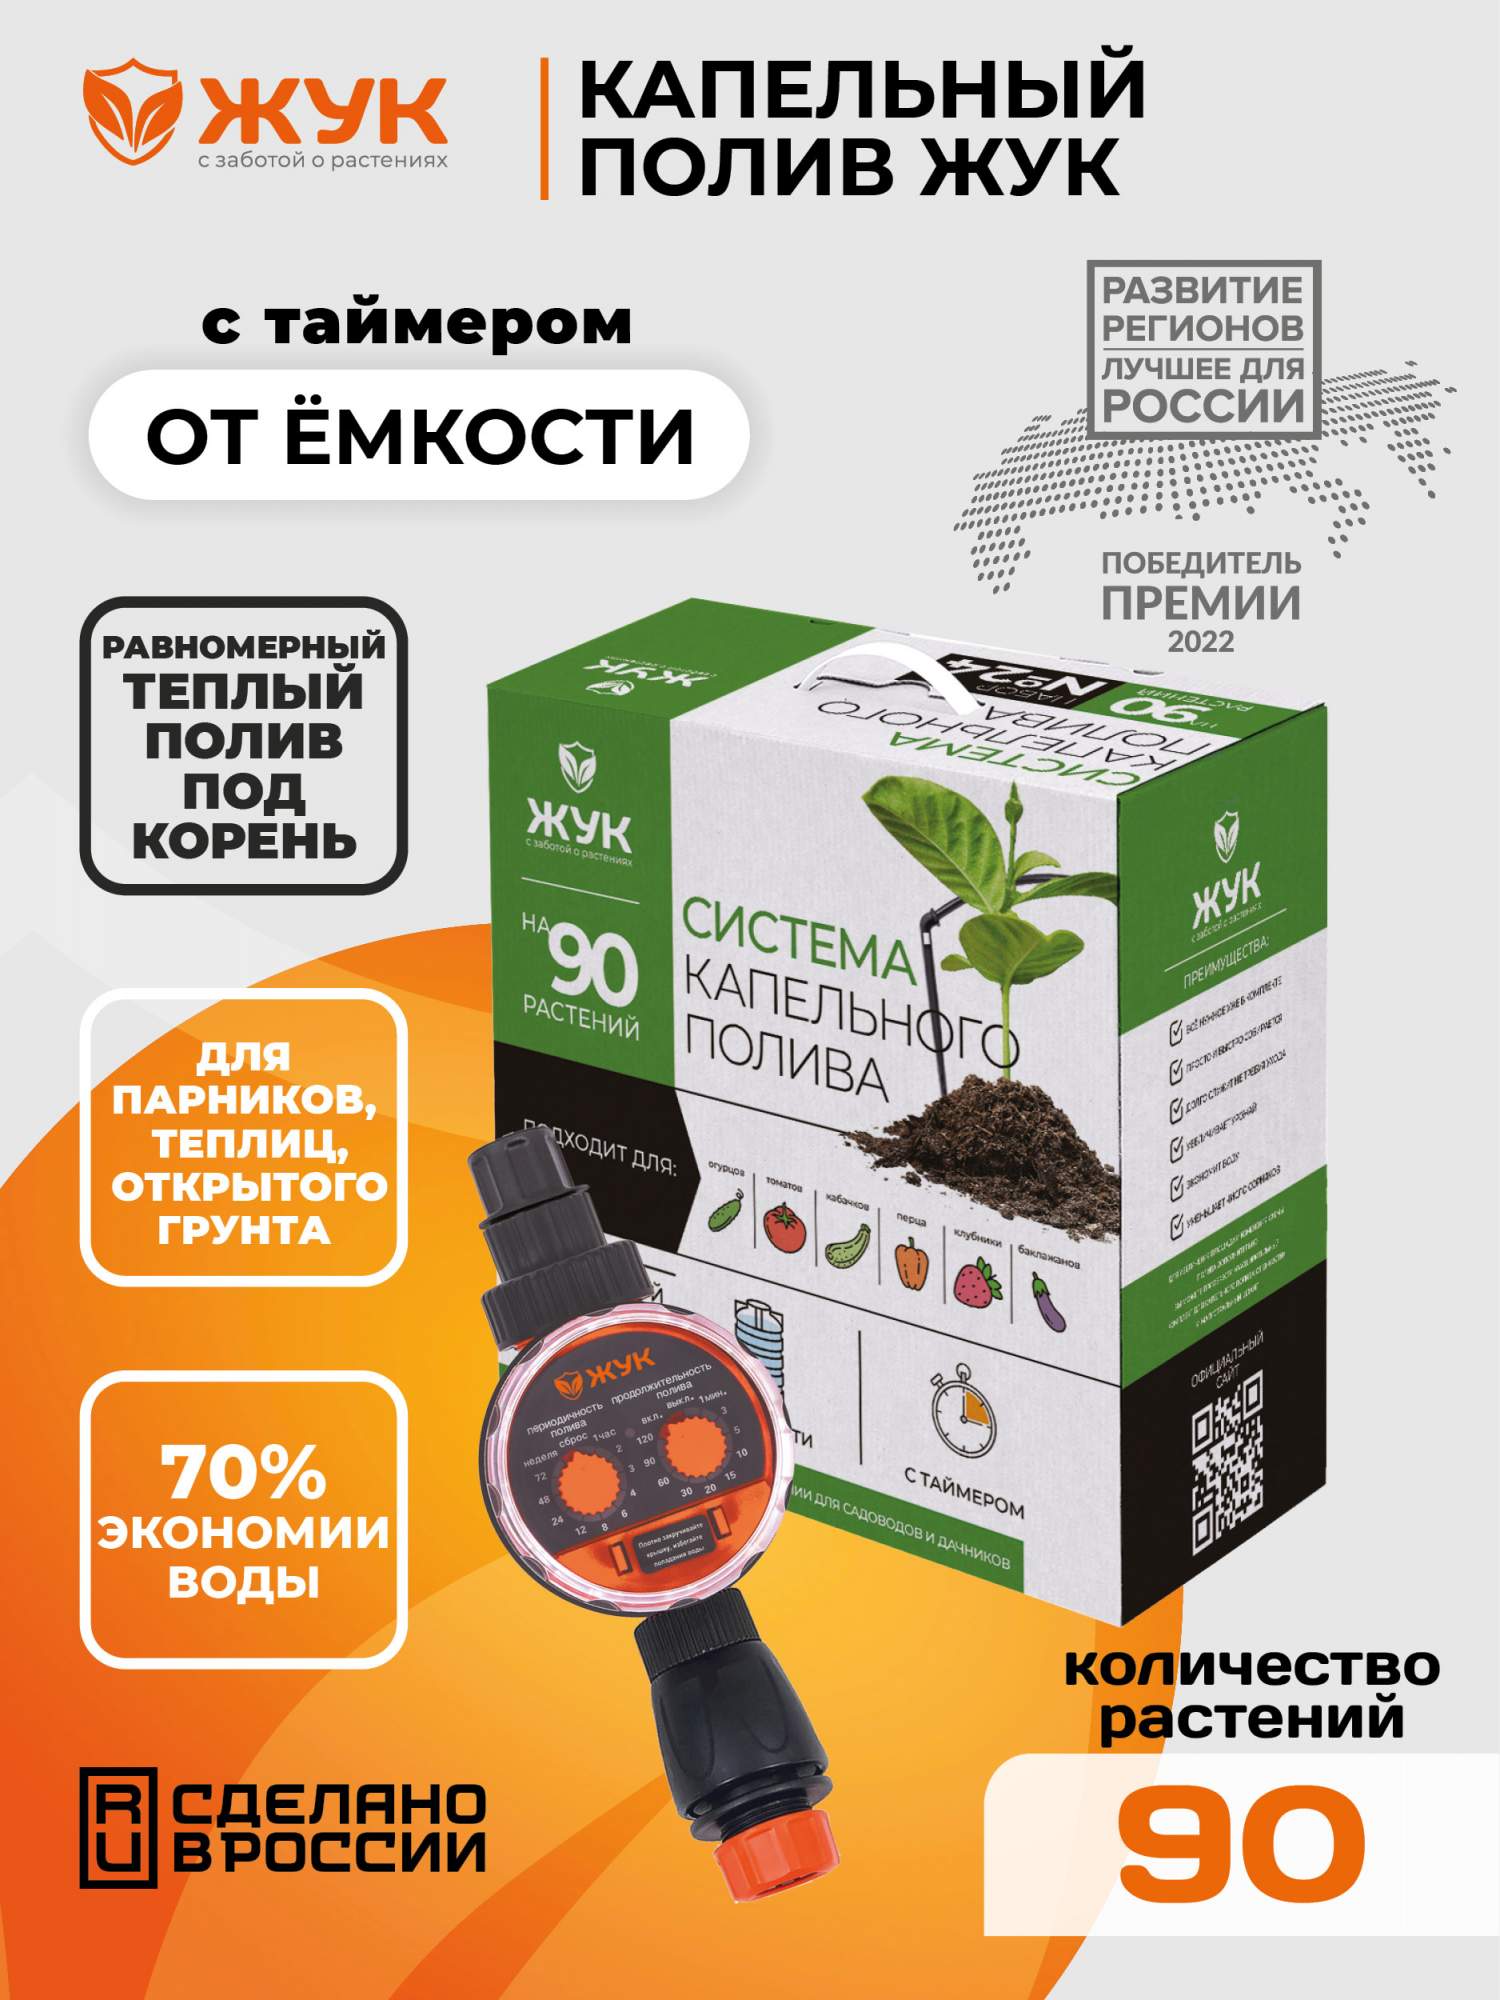 Набор для капельного полива Жук 7985-00 на 90 растений с таймером - купить в Москве, цены на Мегамаркет